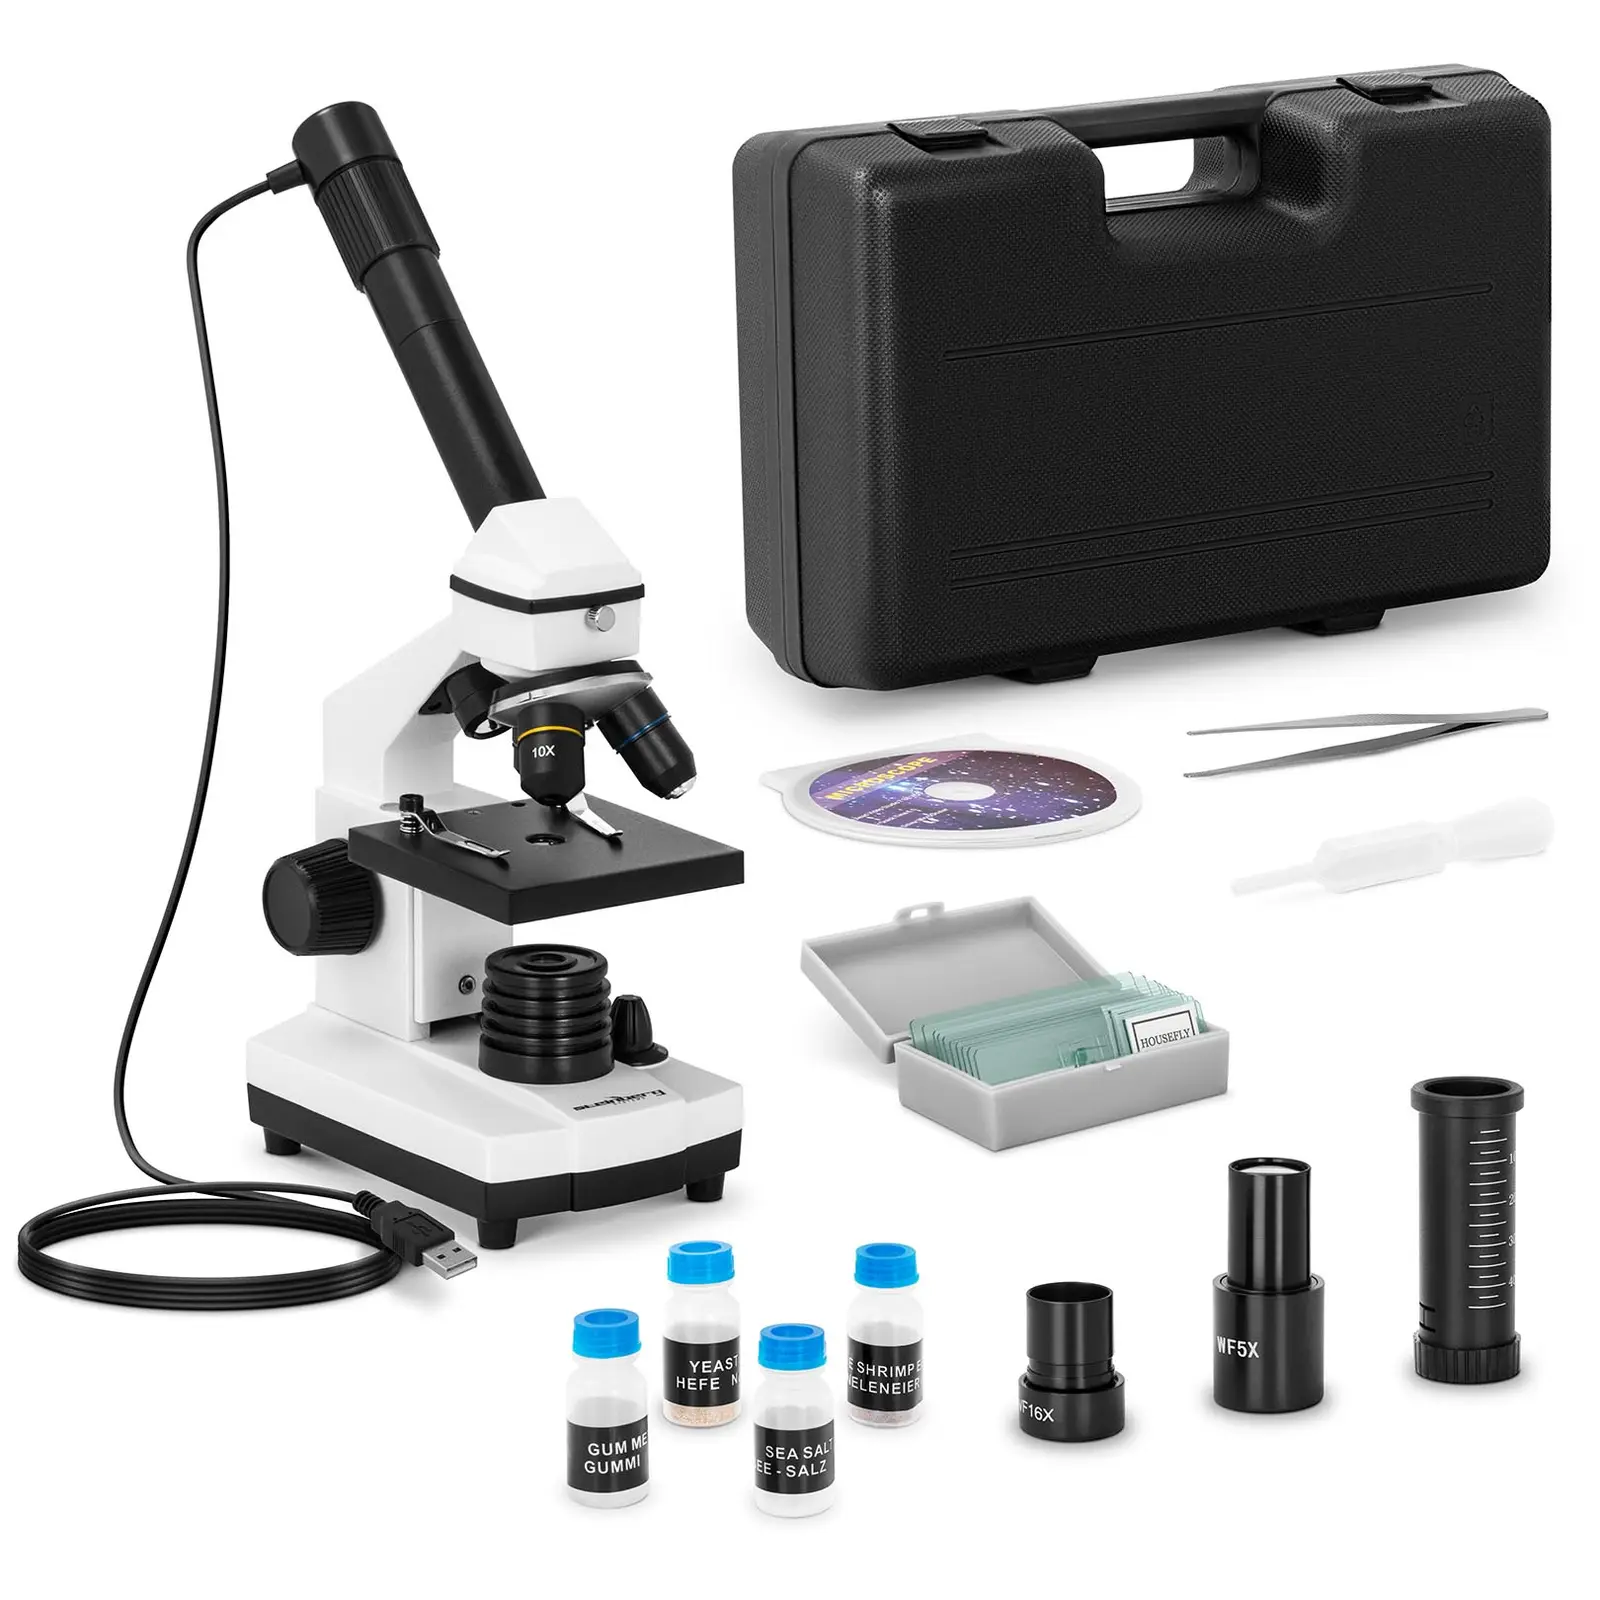 Microscopio ottico - Da 20 a 1.280 volte - Fotocamera 10 MP - LED - Accessori inclusi